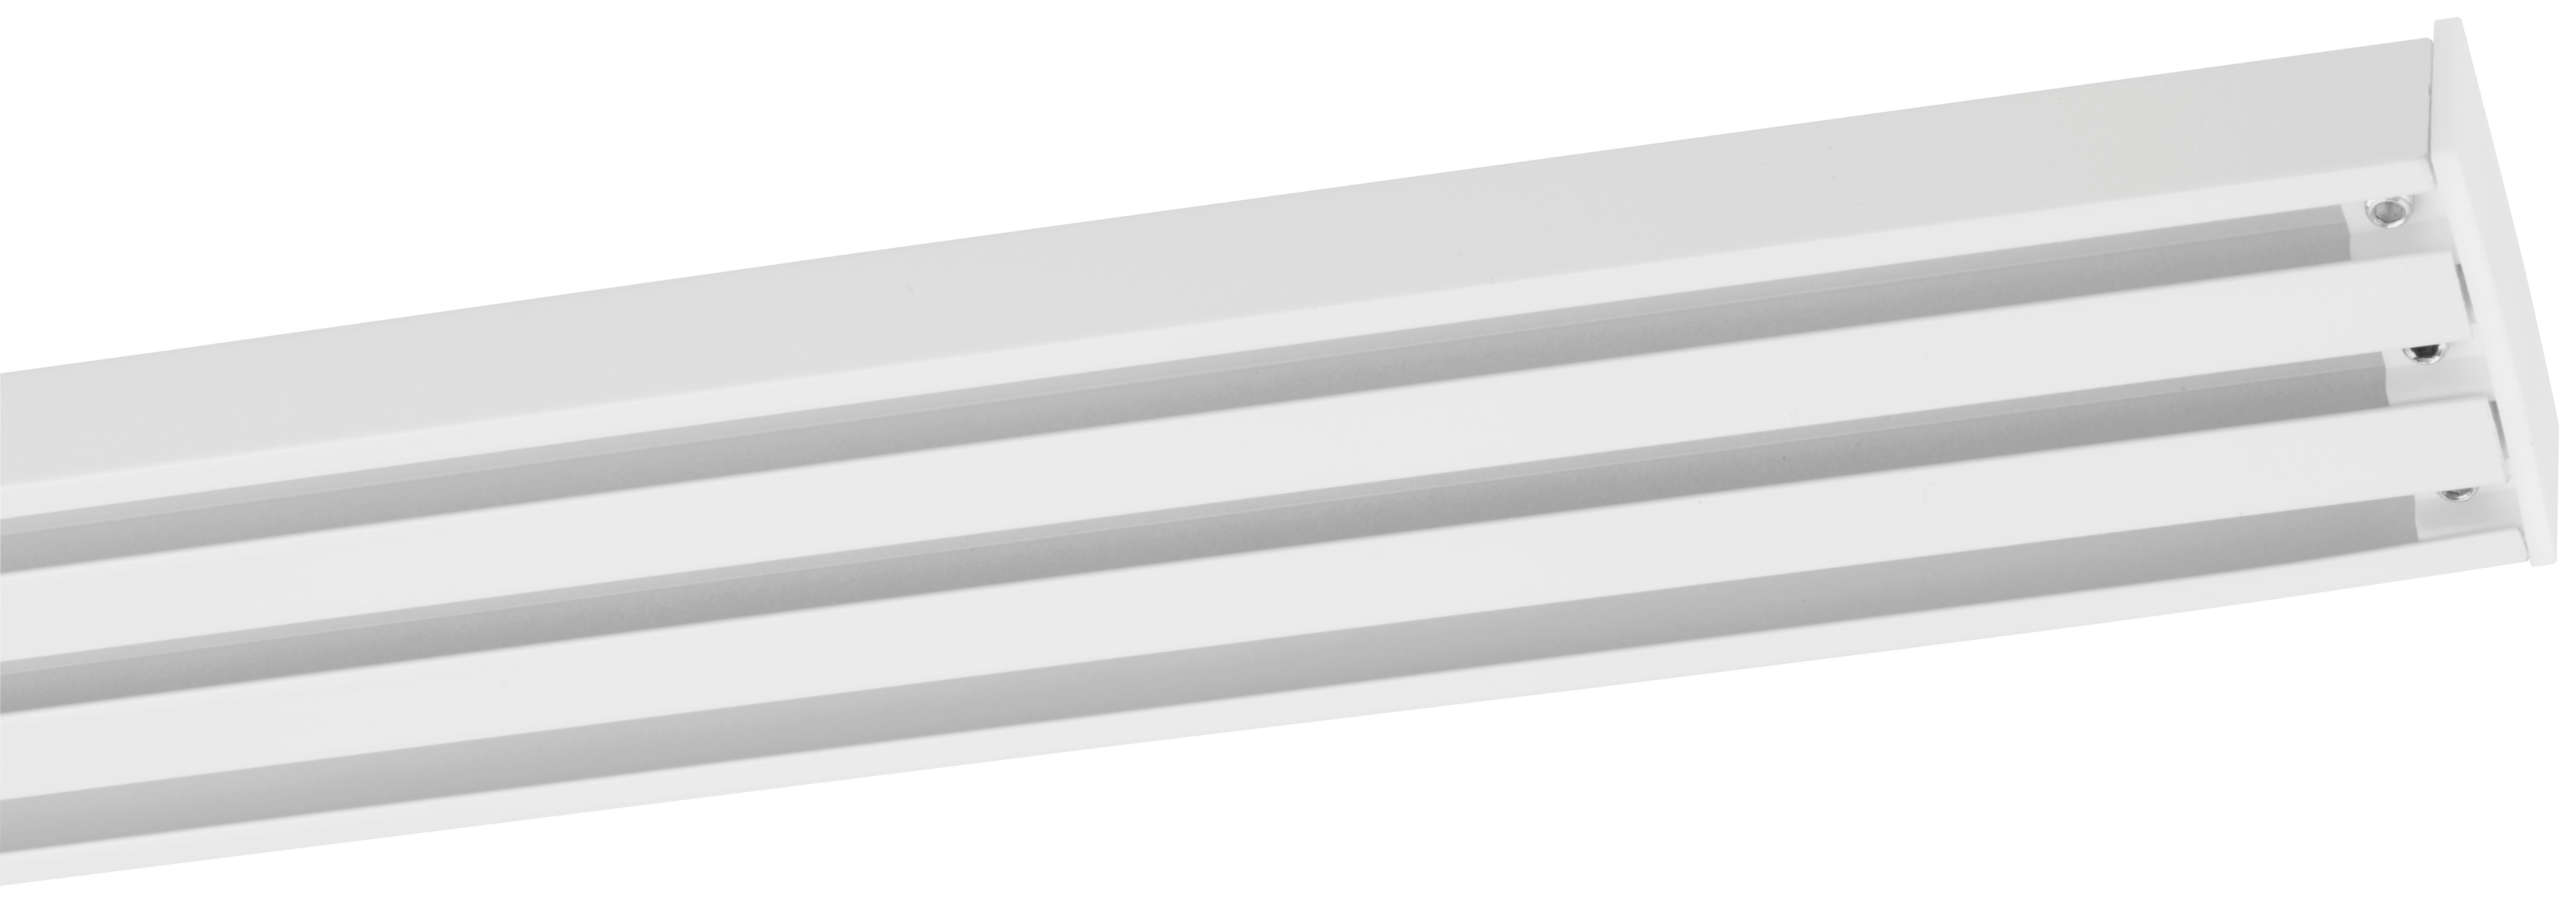 Vorhangschiene Style in Weiß ca. 260cm - Weiß, Metall (260cm) - Premium Living